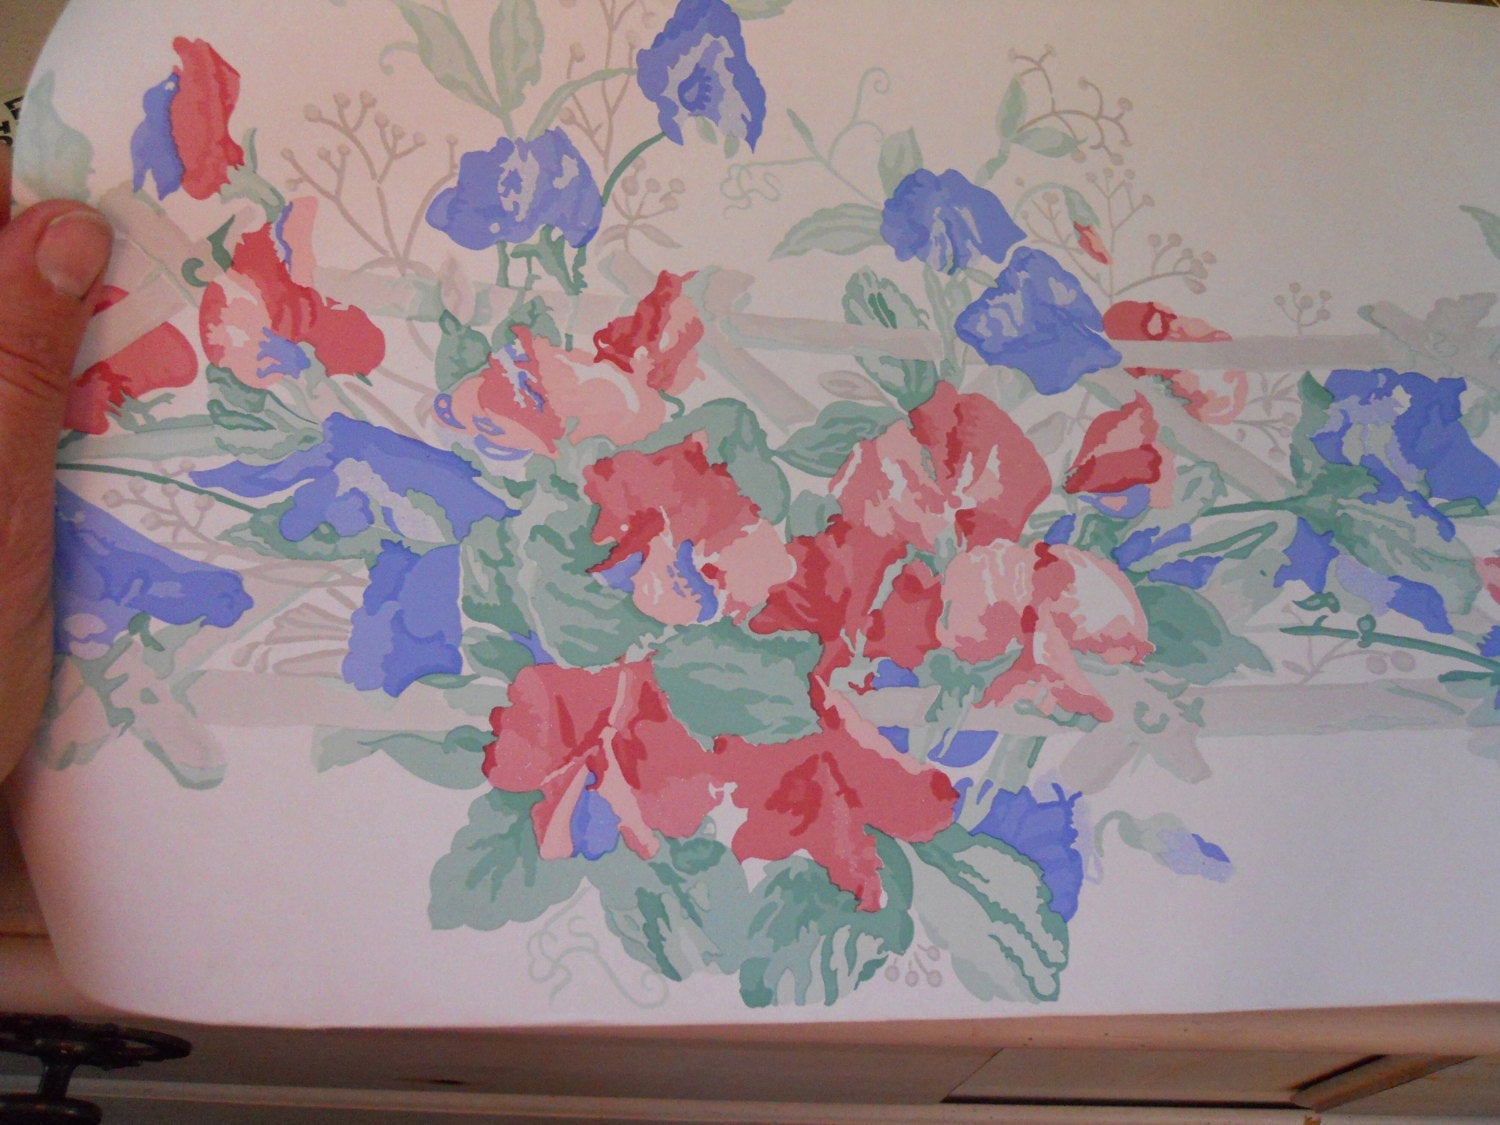 bordures de papier peint laura ashley,la peinture,peinture aquarelle,textile,plante,fleur